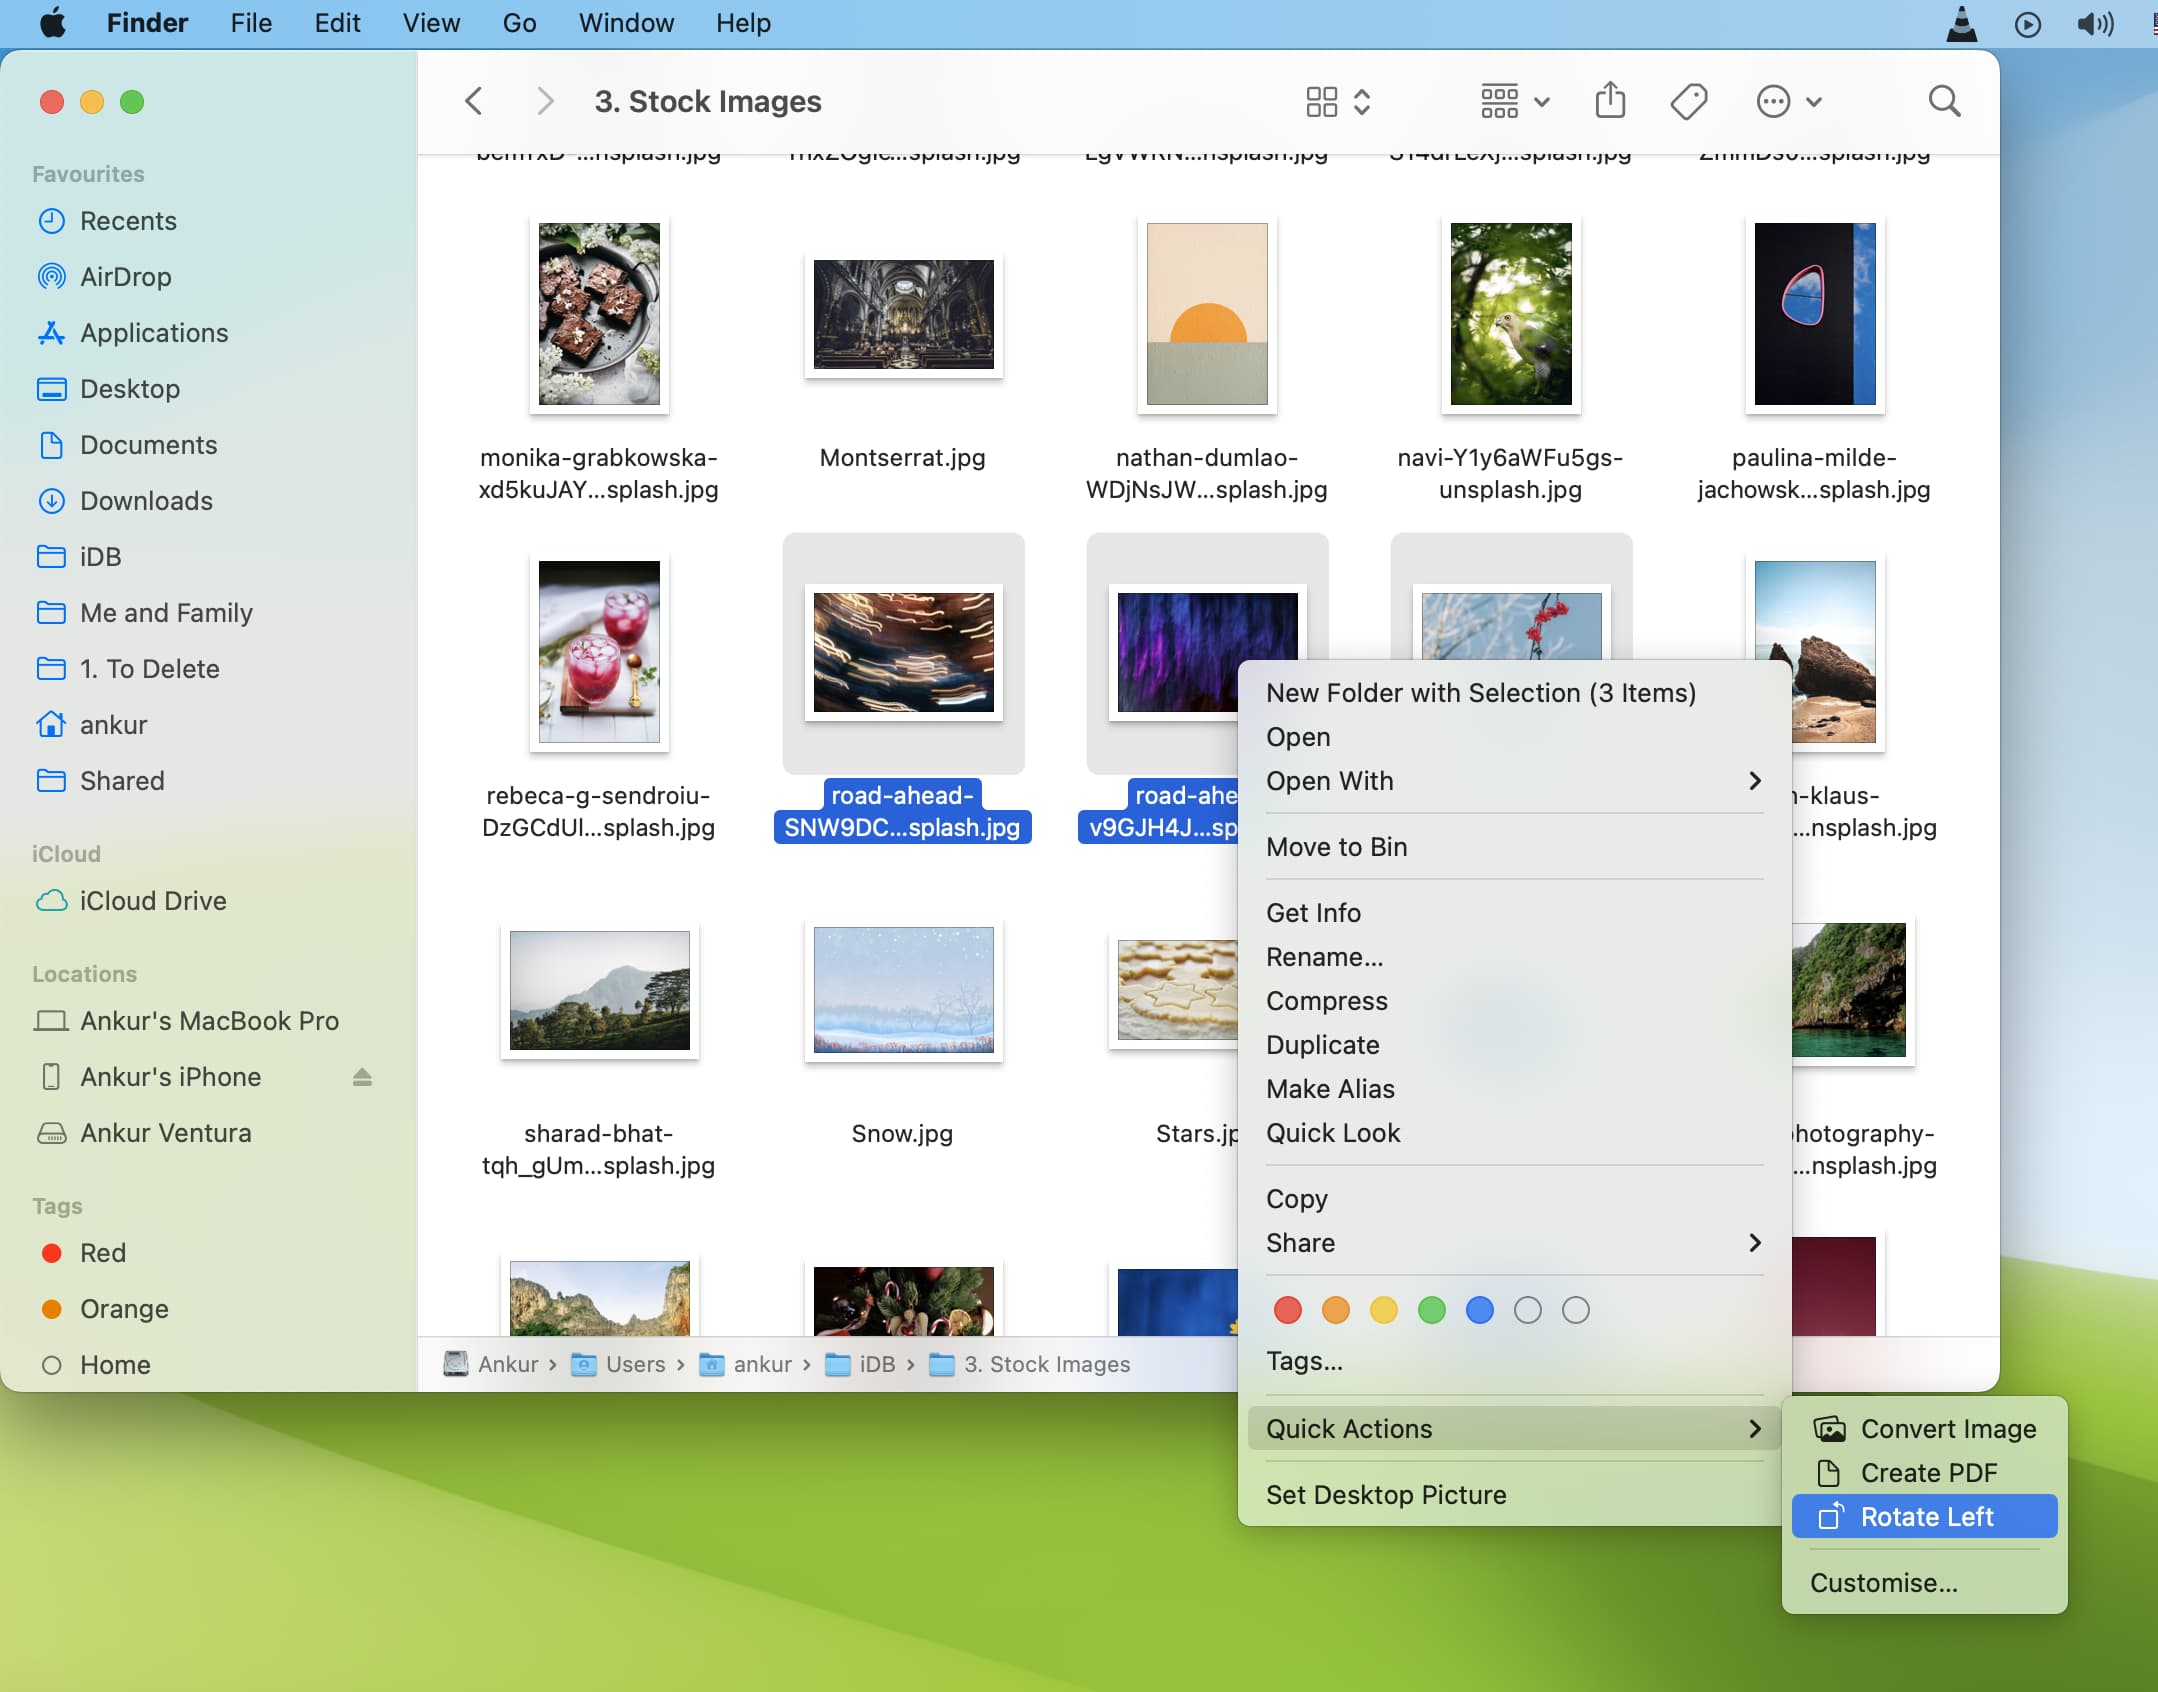 Étapes sur une capture d'écran montrant comment faire pivoter plusieurs images à la fois à l'aide d'Actions rapides sur Mac